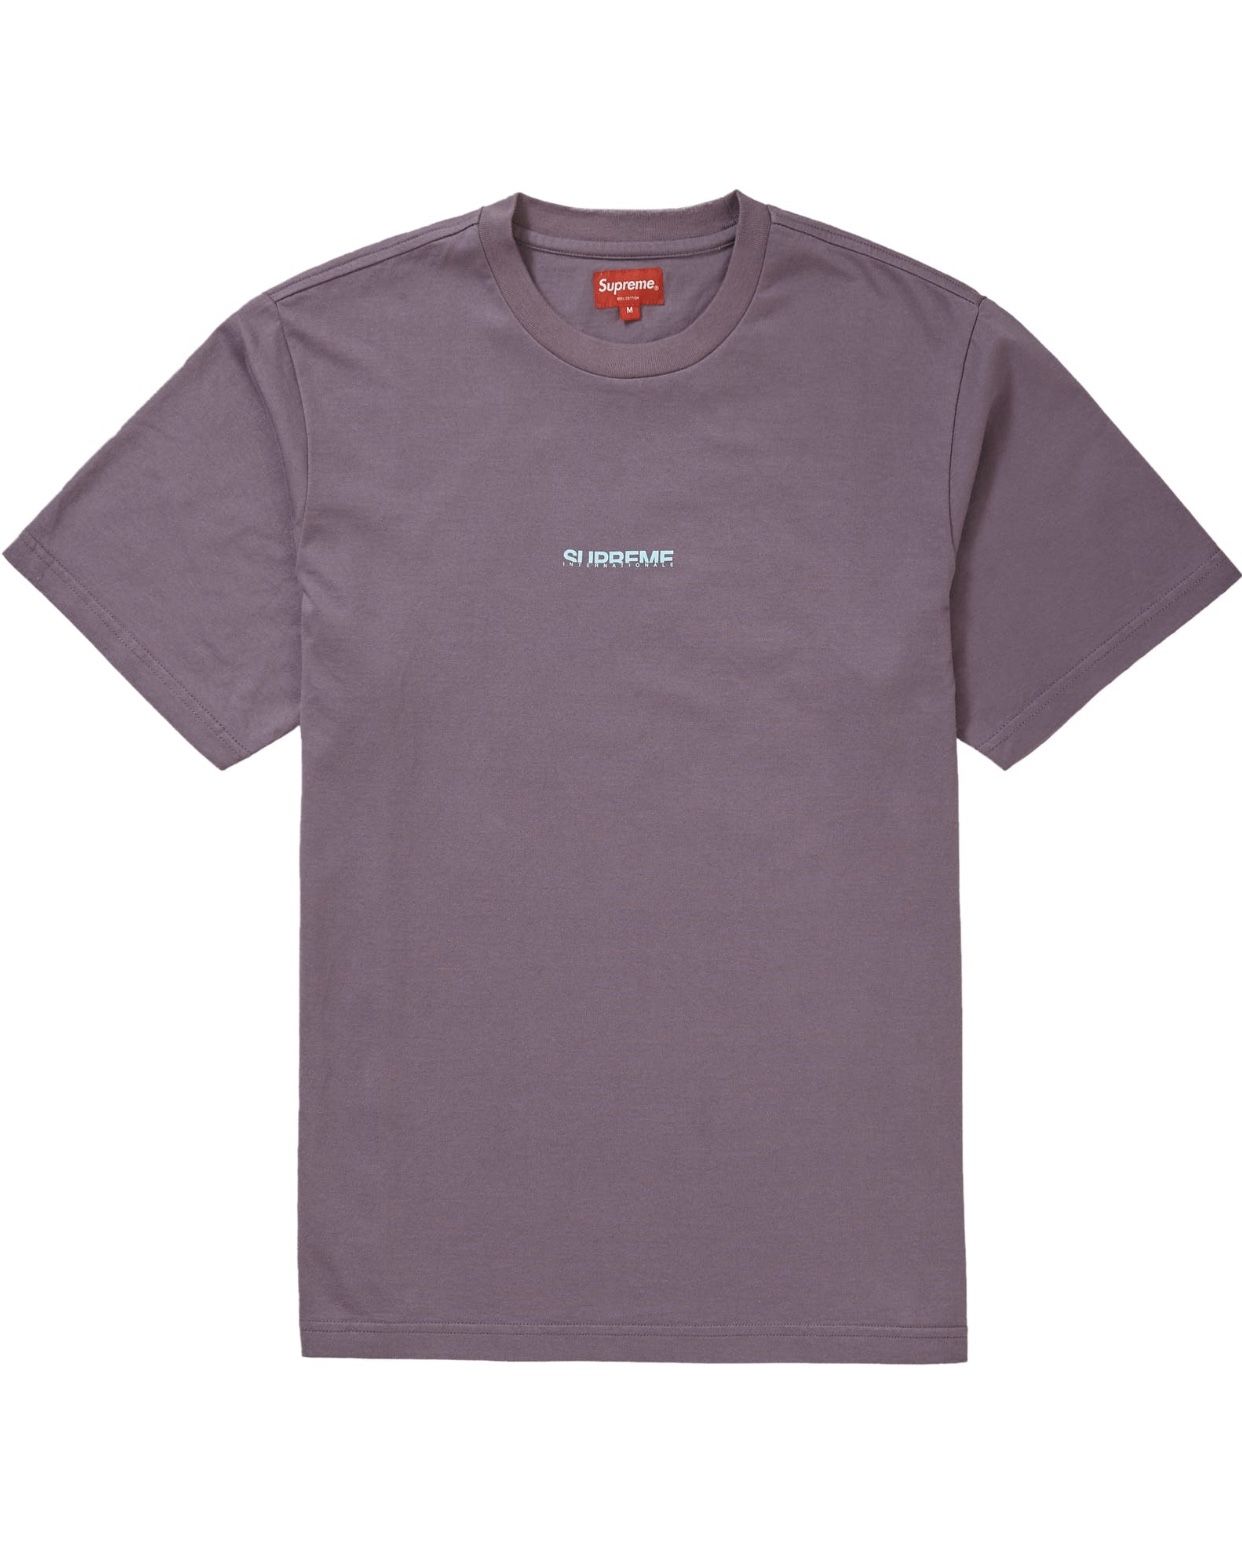 Supreme Internationale T-shirt Small Dusty Purple